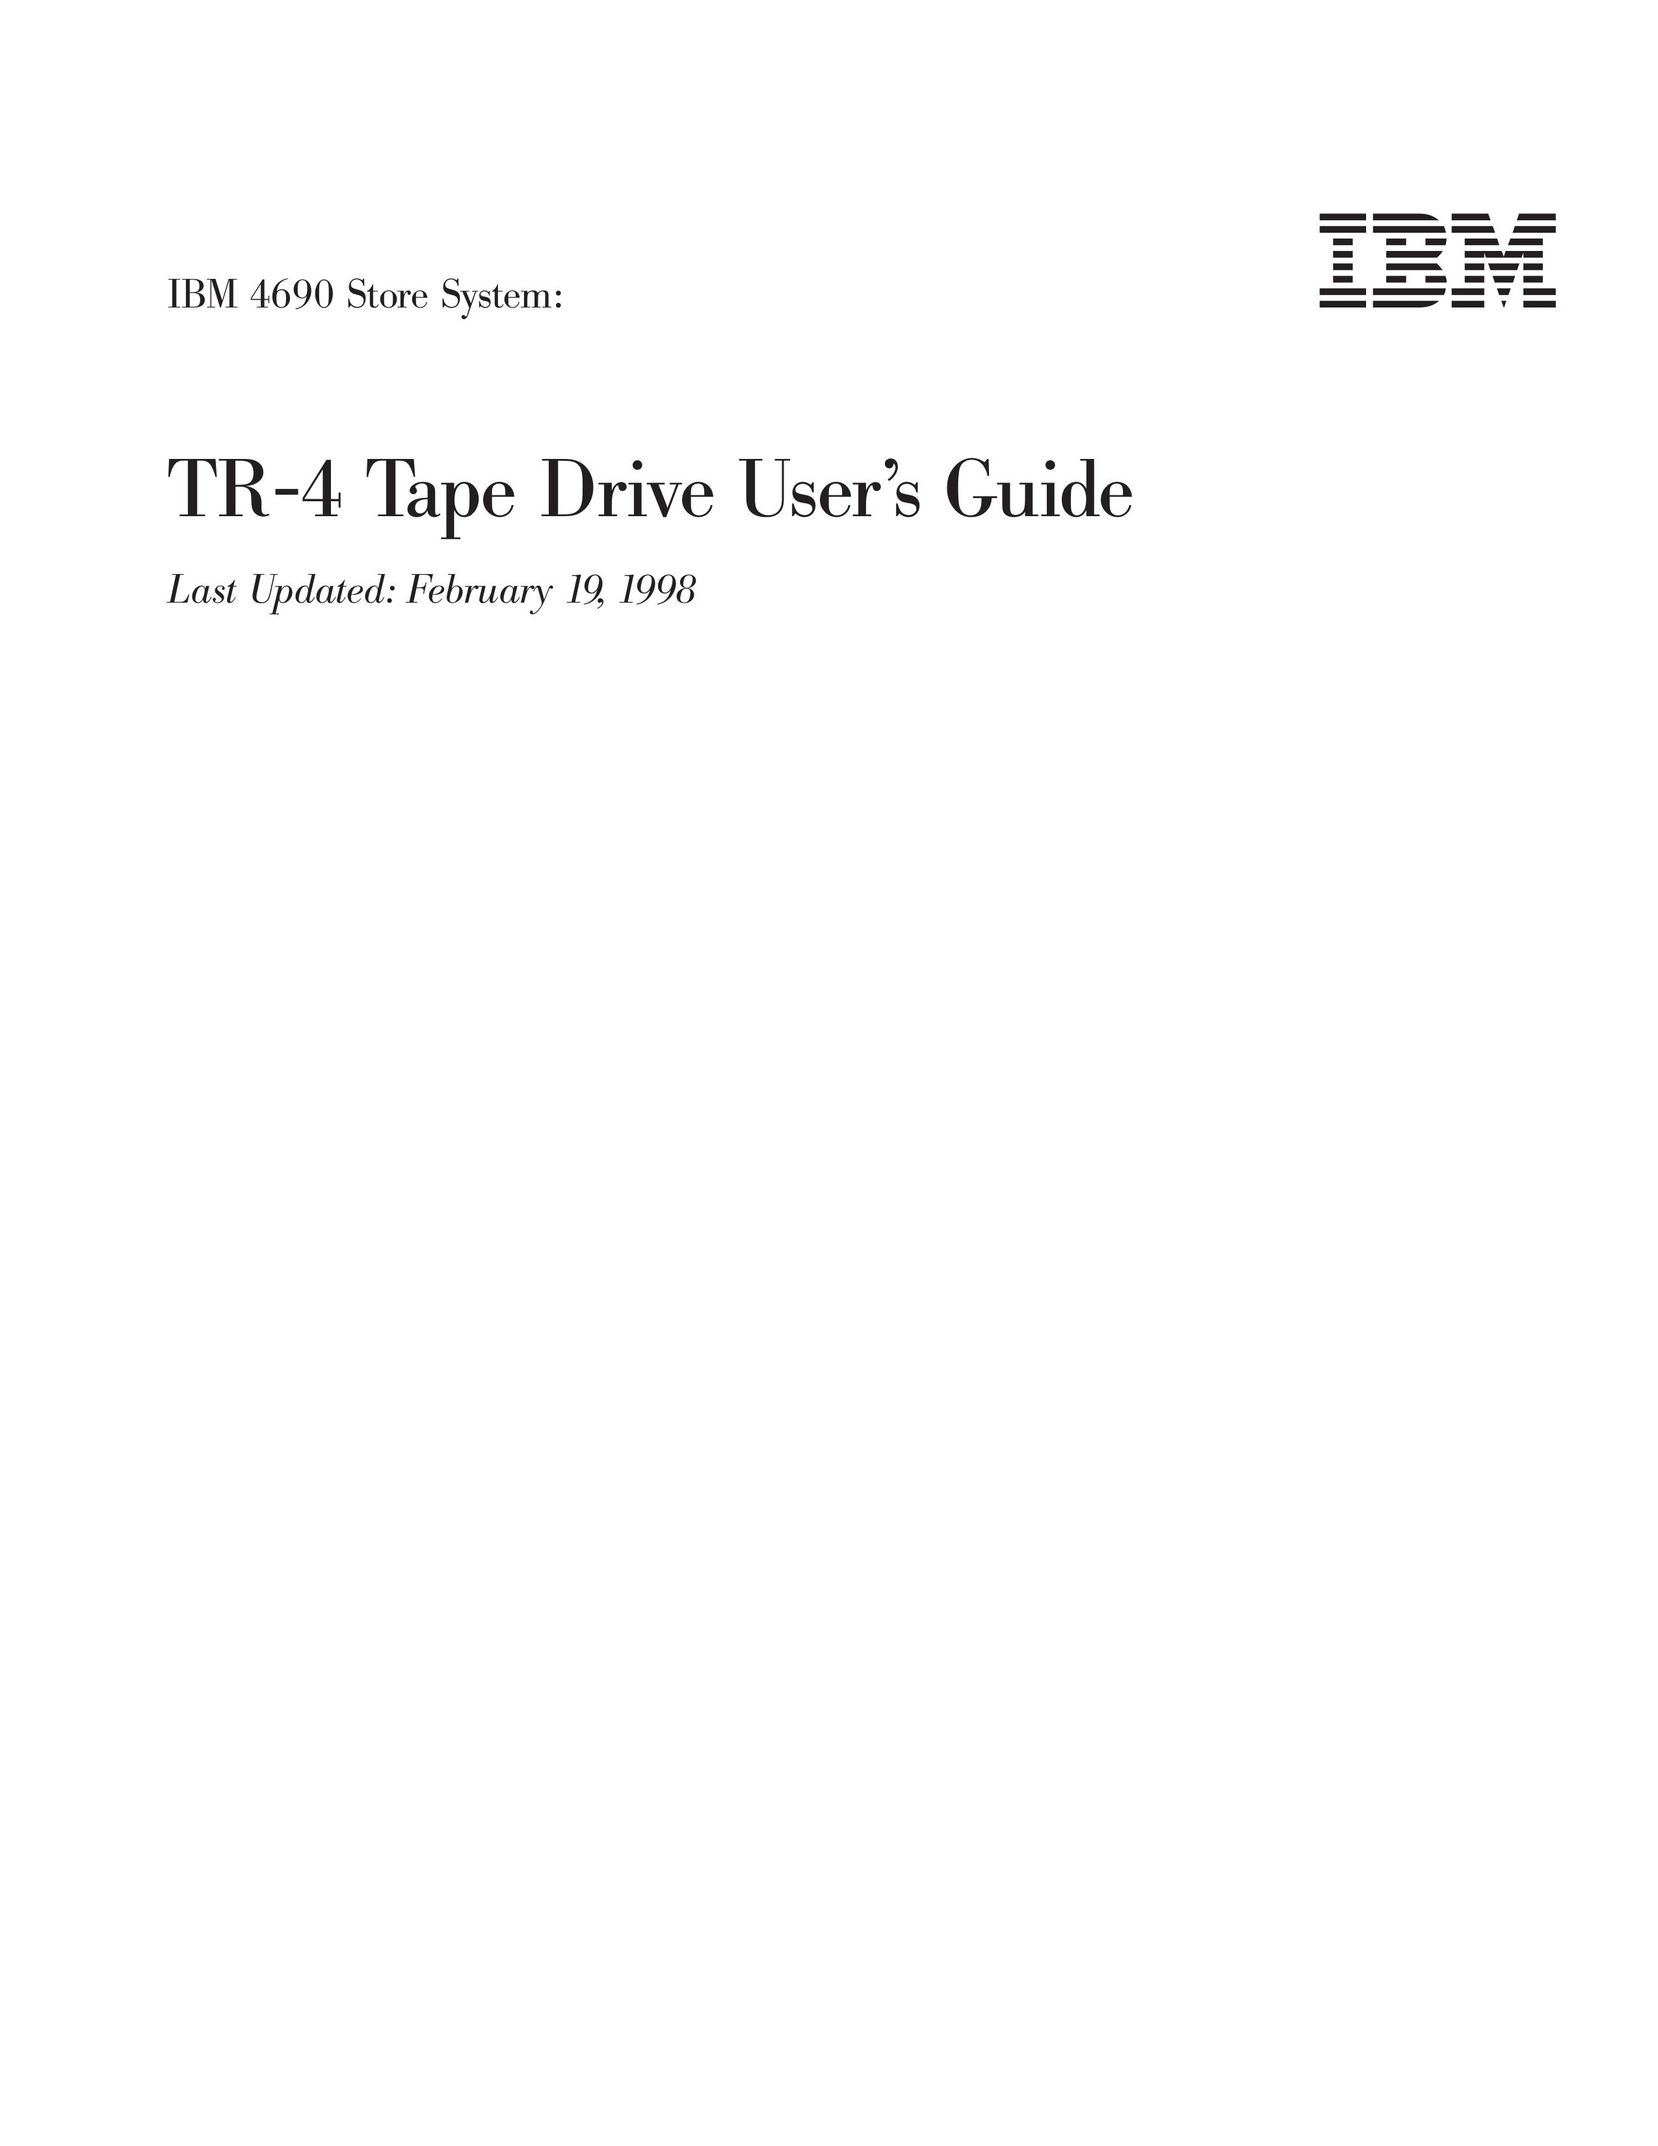 IBM 4690 Cassette Player User Manual